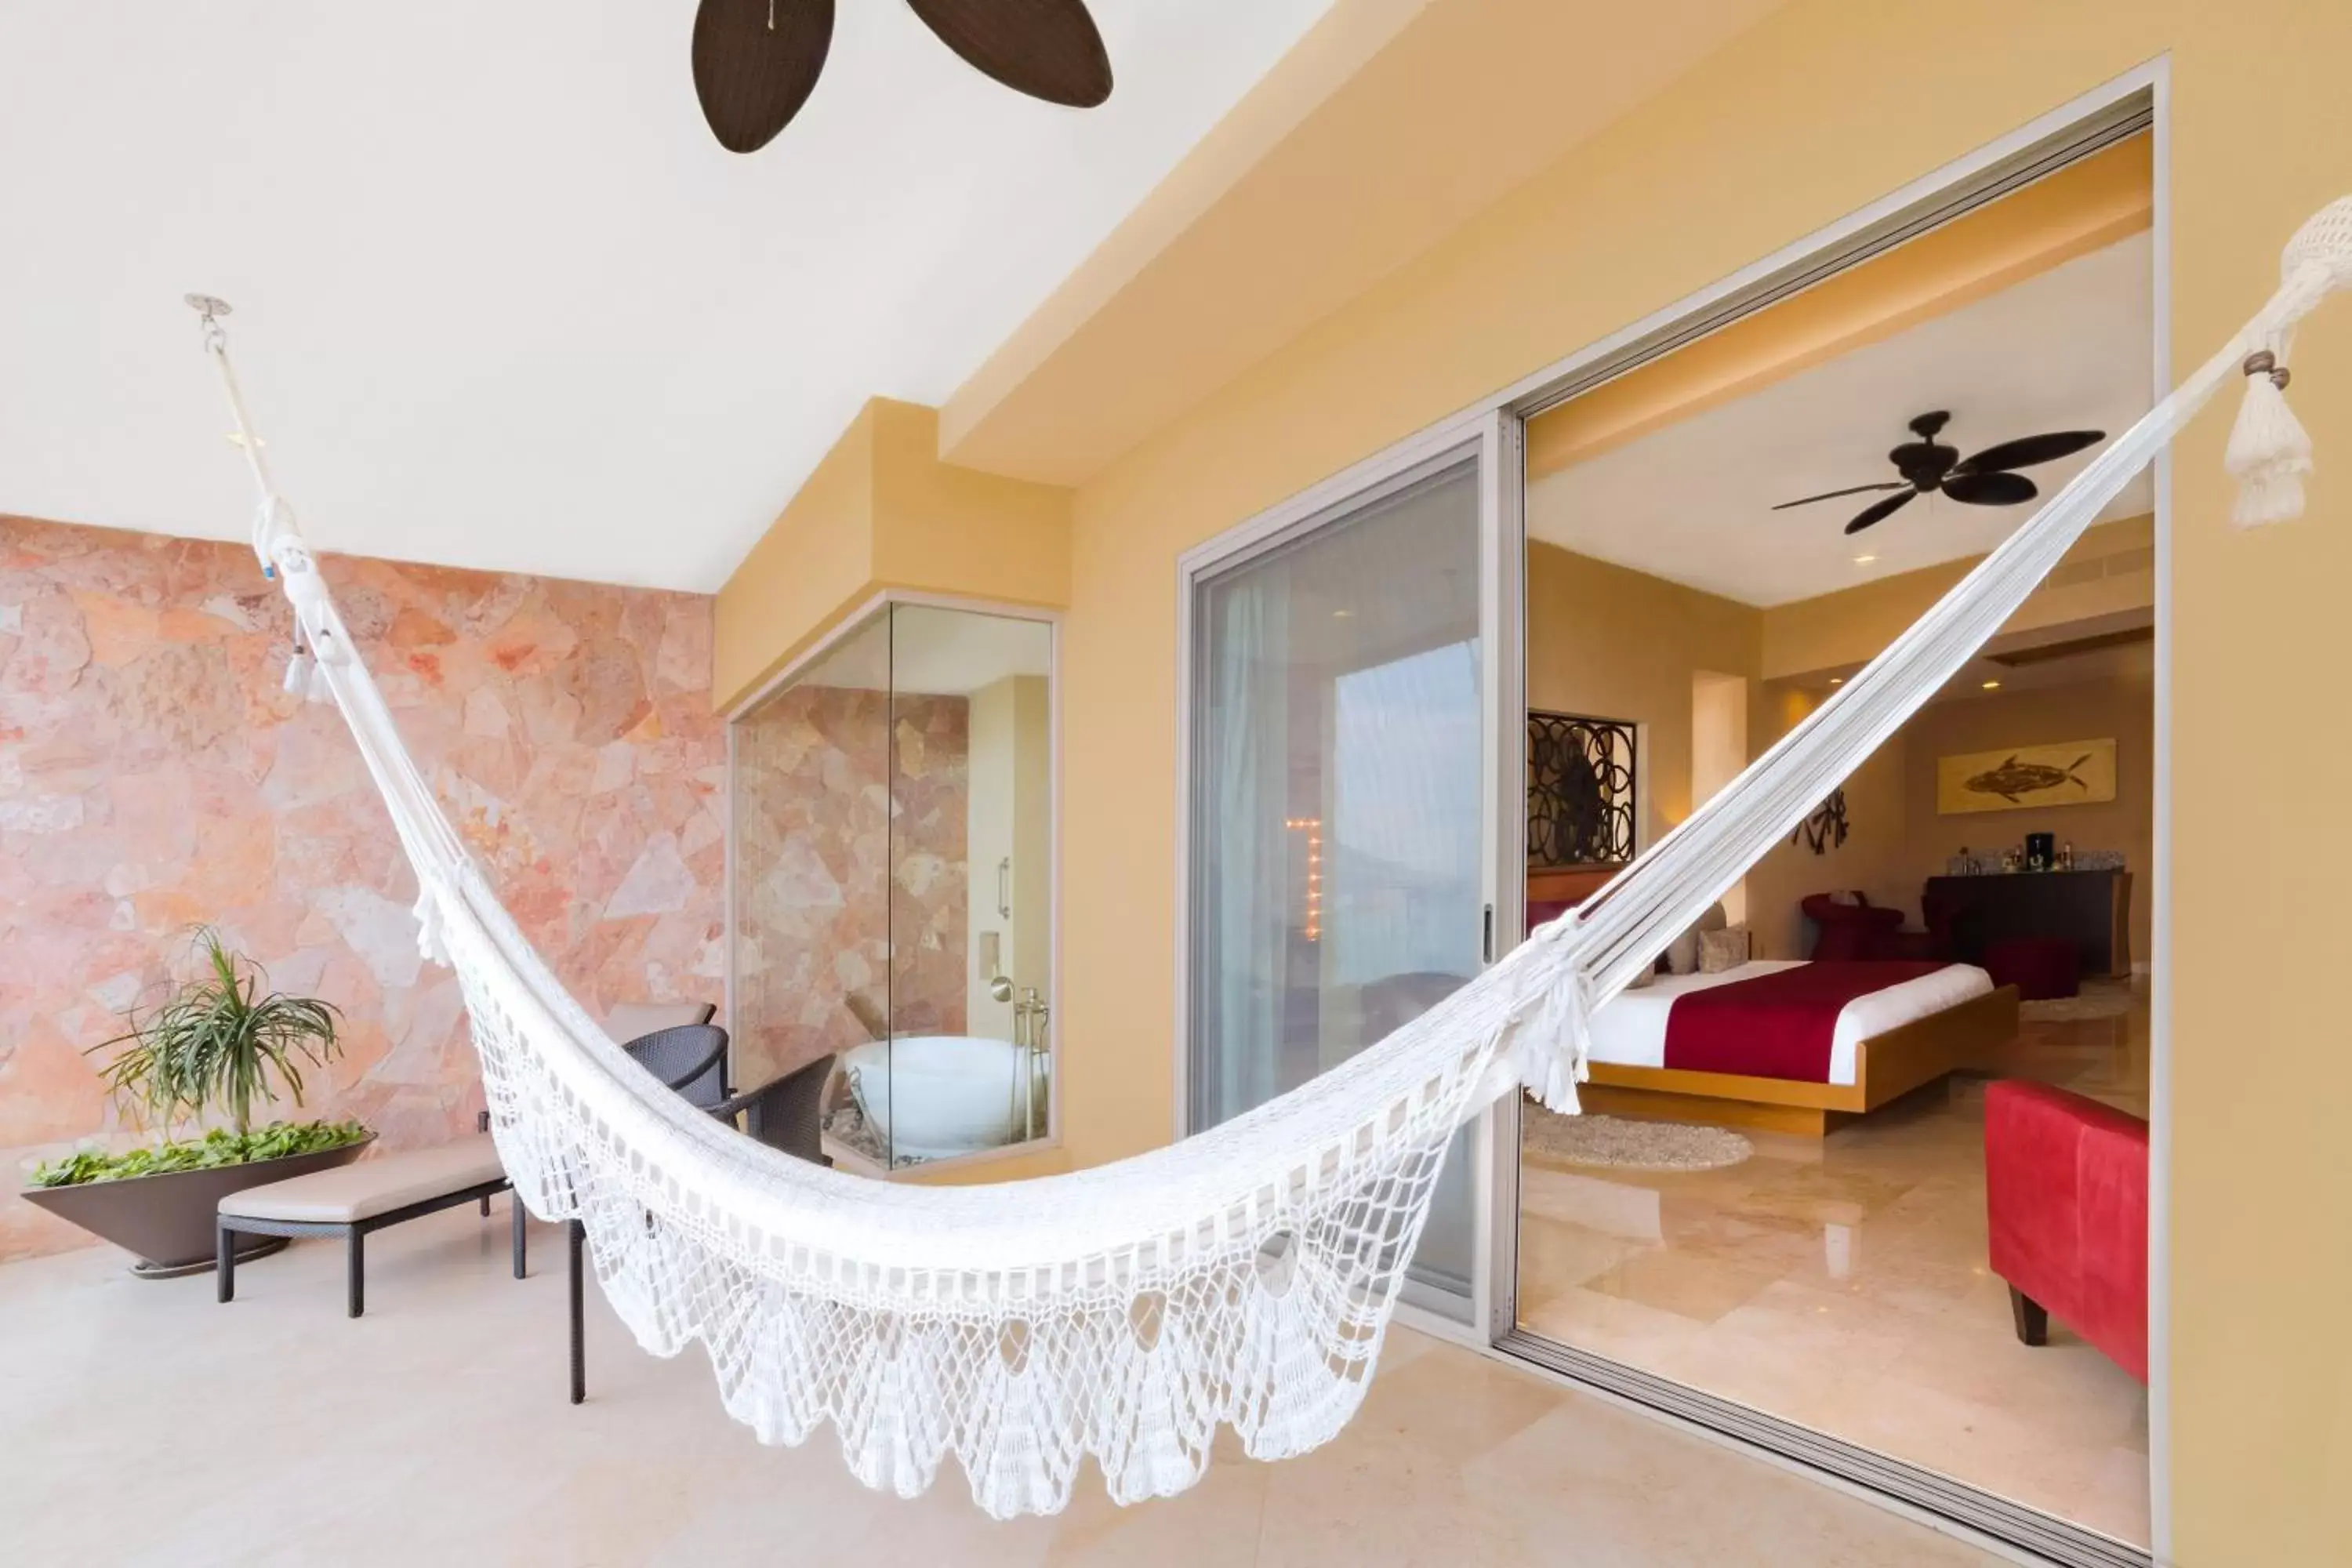 Balcony/Terrace in Garza Blanca Preserve Resort & Spa